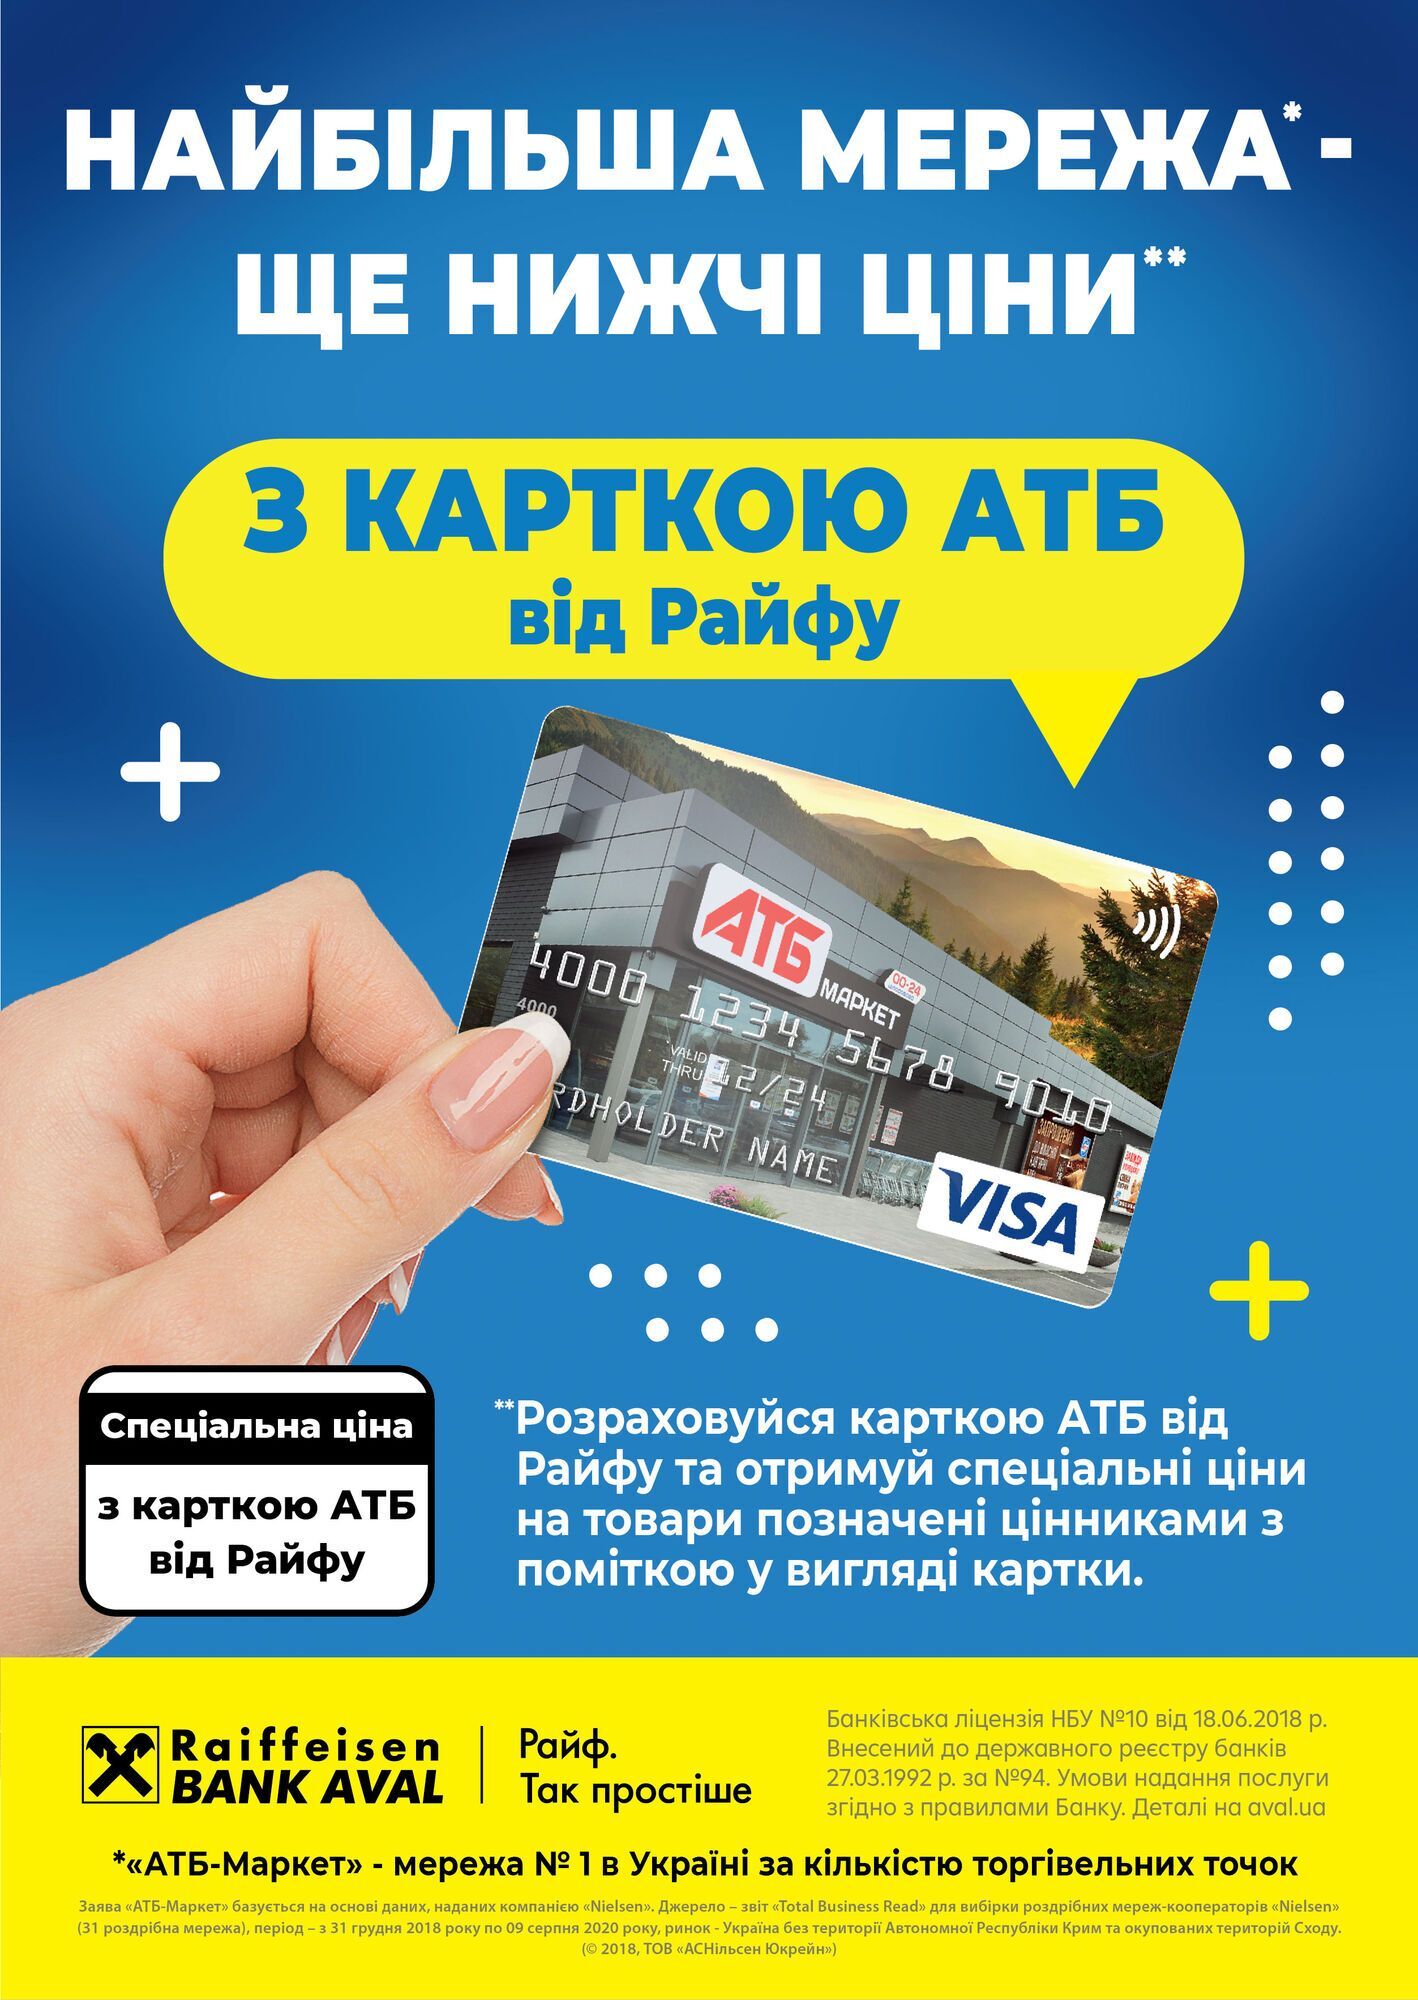 Потенциал выпуска карточек "АТБ" в Украине составляет около 20 млн штук